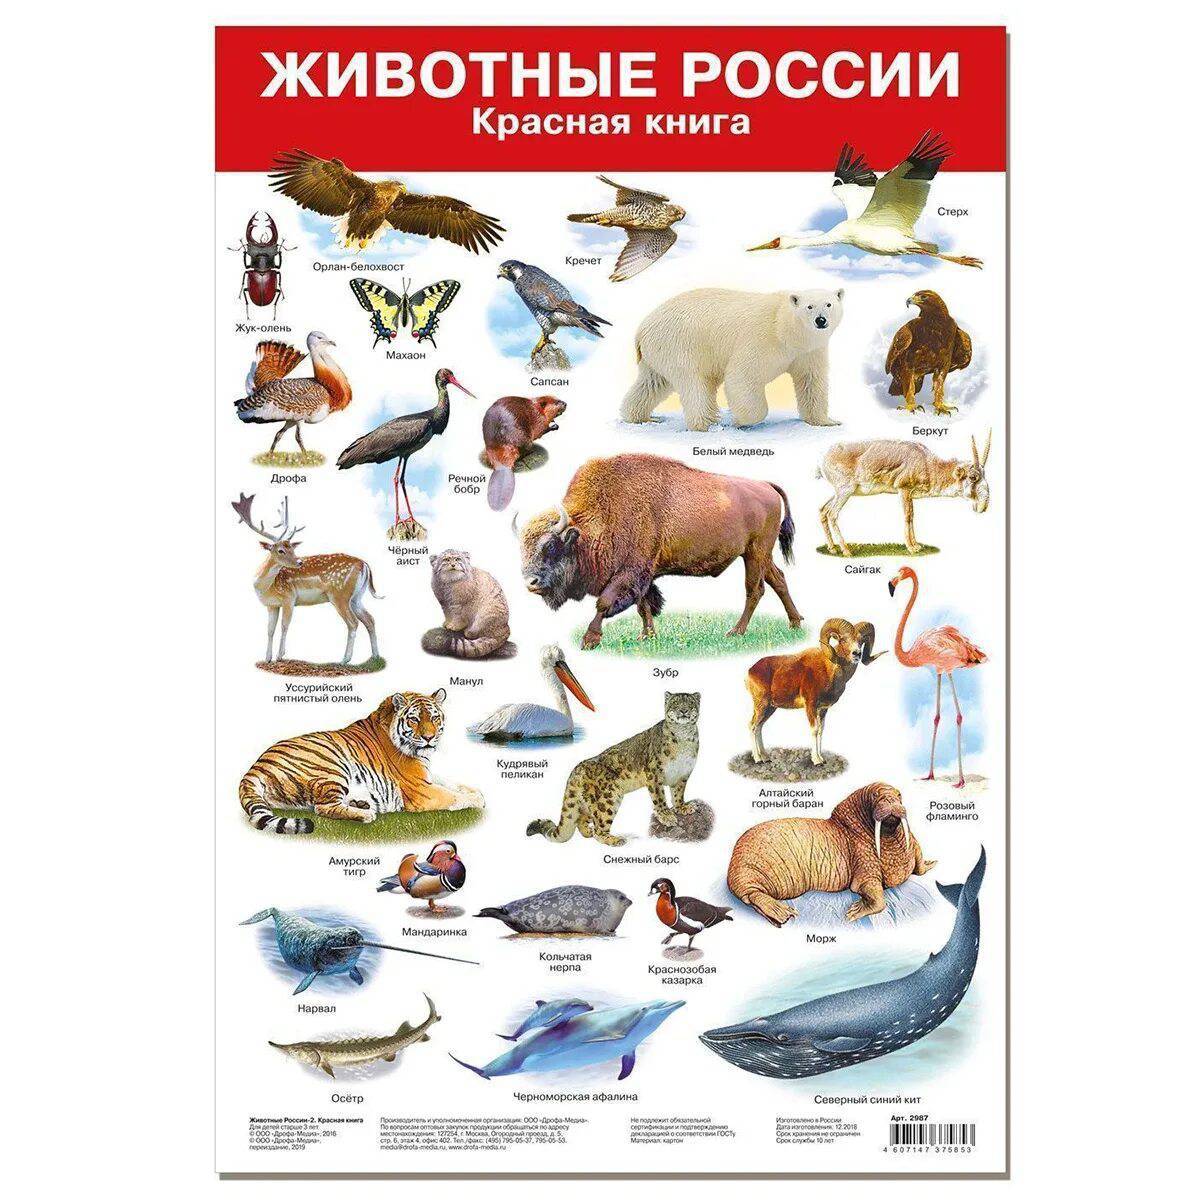 Животные красной книги россии #1